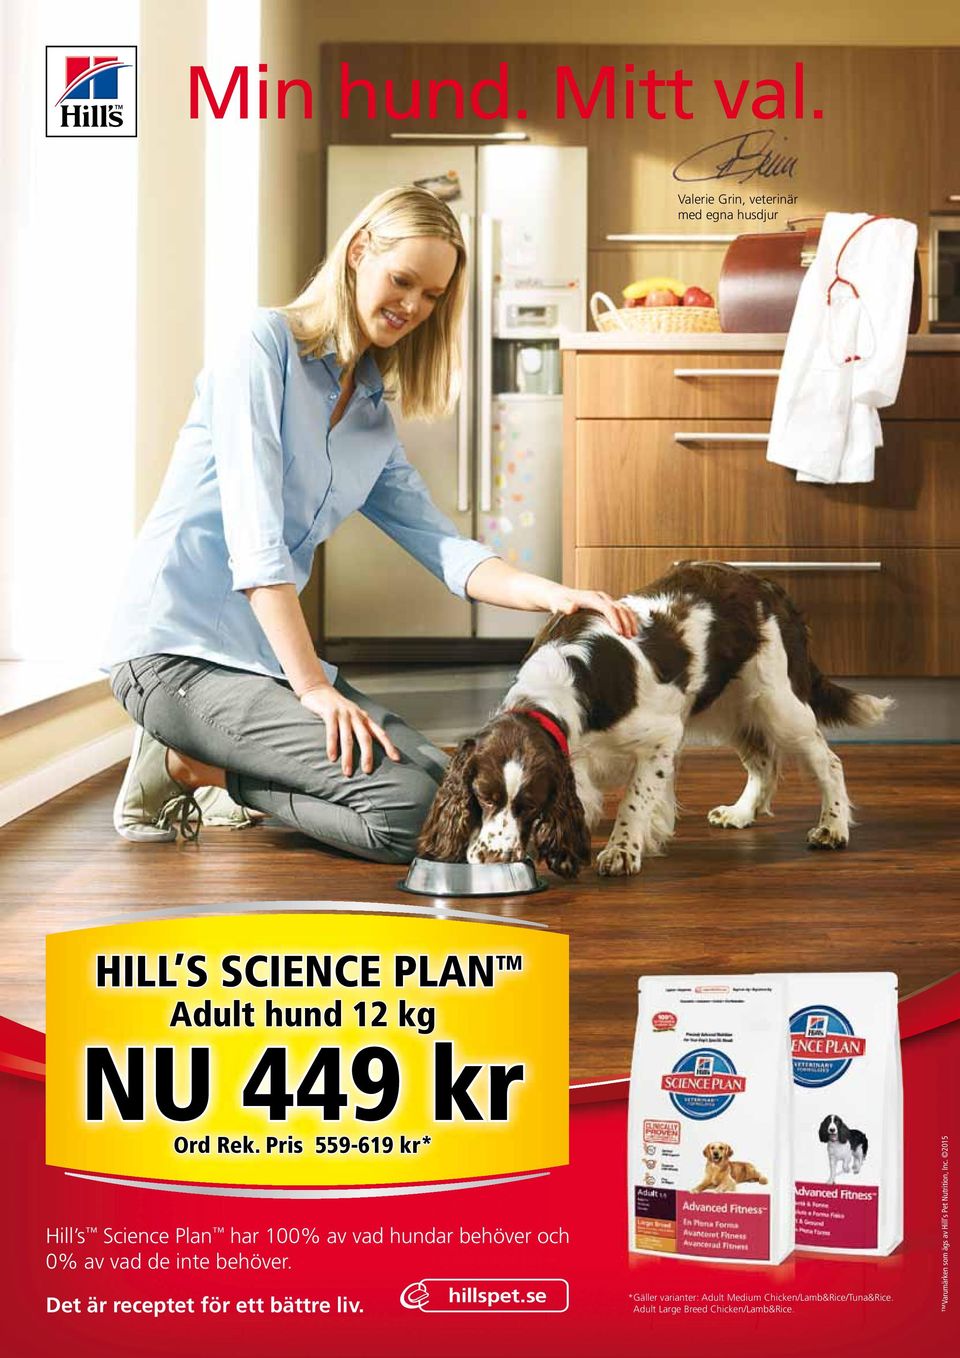 Pris 559-619 kr* Hill s Science Plan har 100% av vad hundar behöver och 0% av vad de inte behöver.